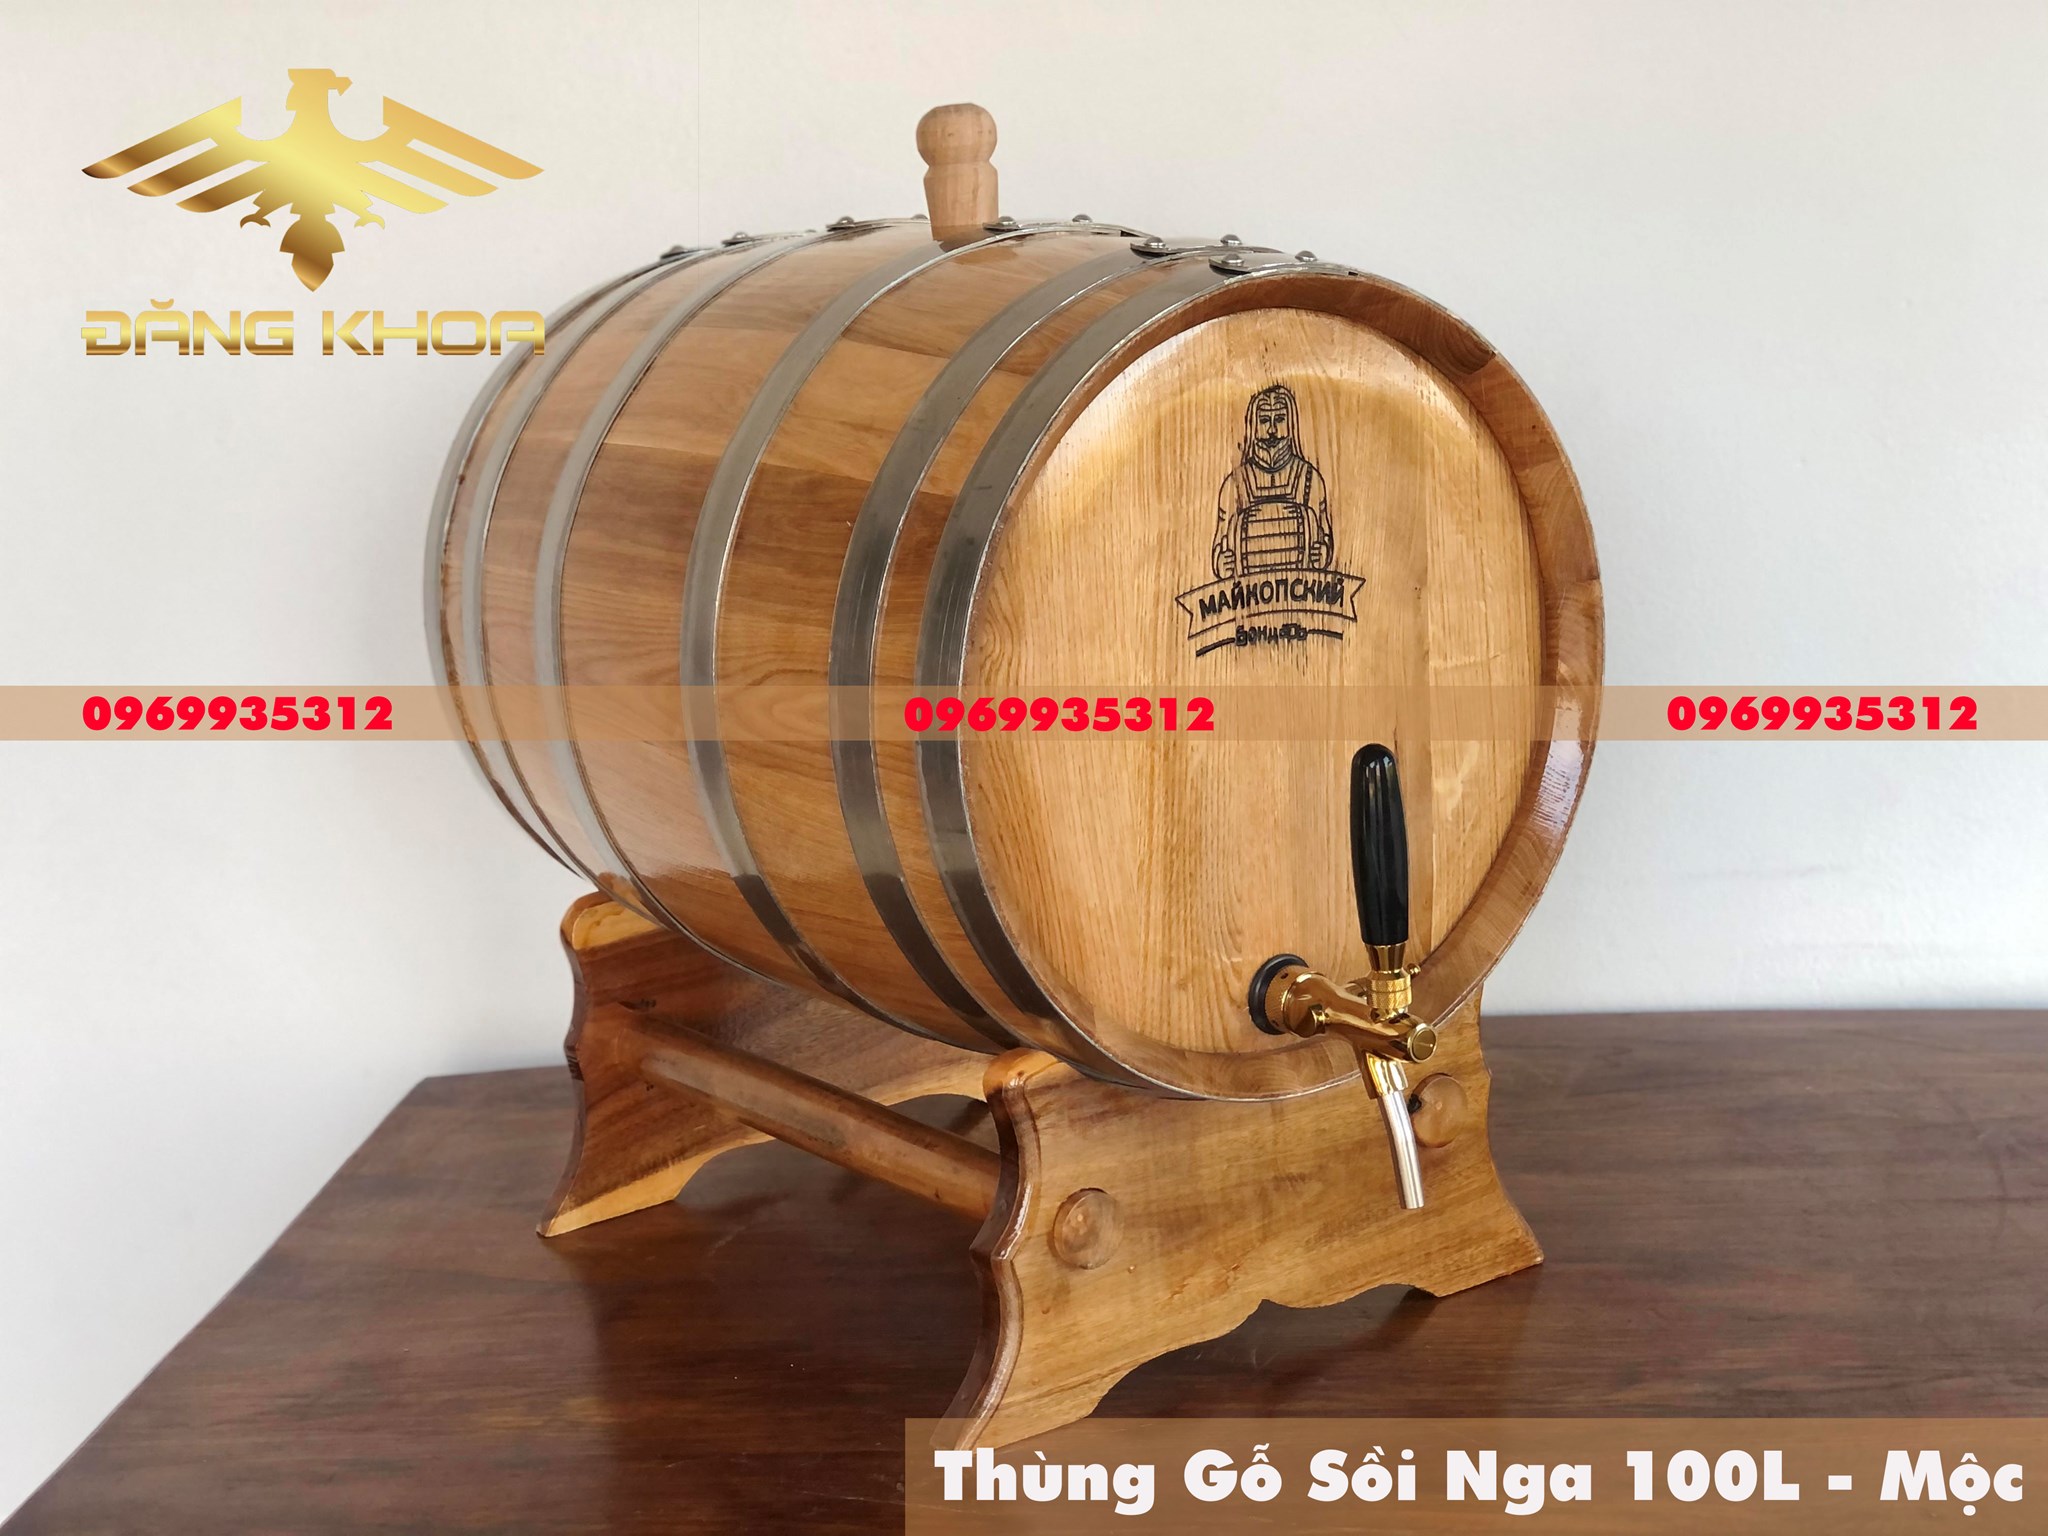 Bình gỗ sồi ngâm rượu: phương pháp bảo quản rượu hàng đầu